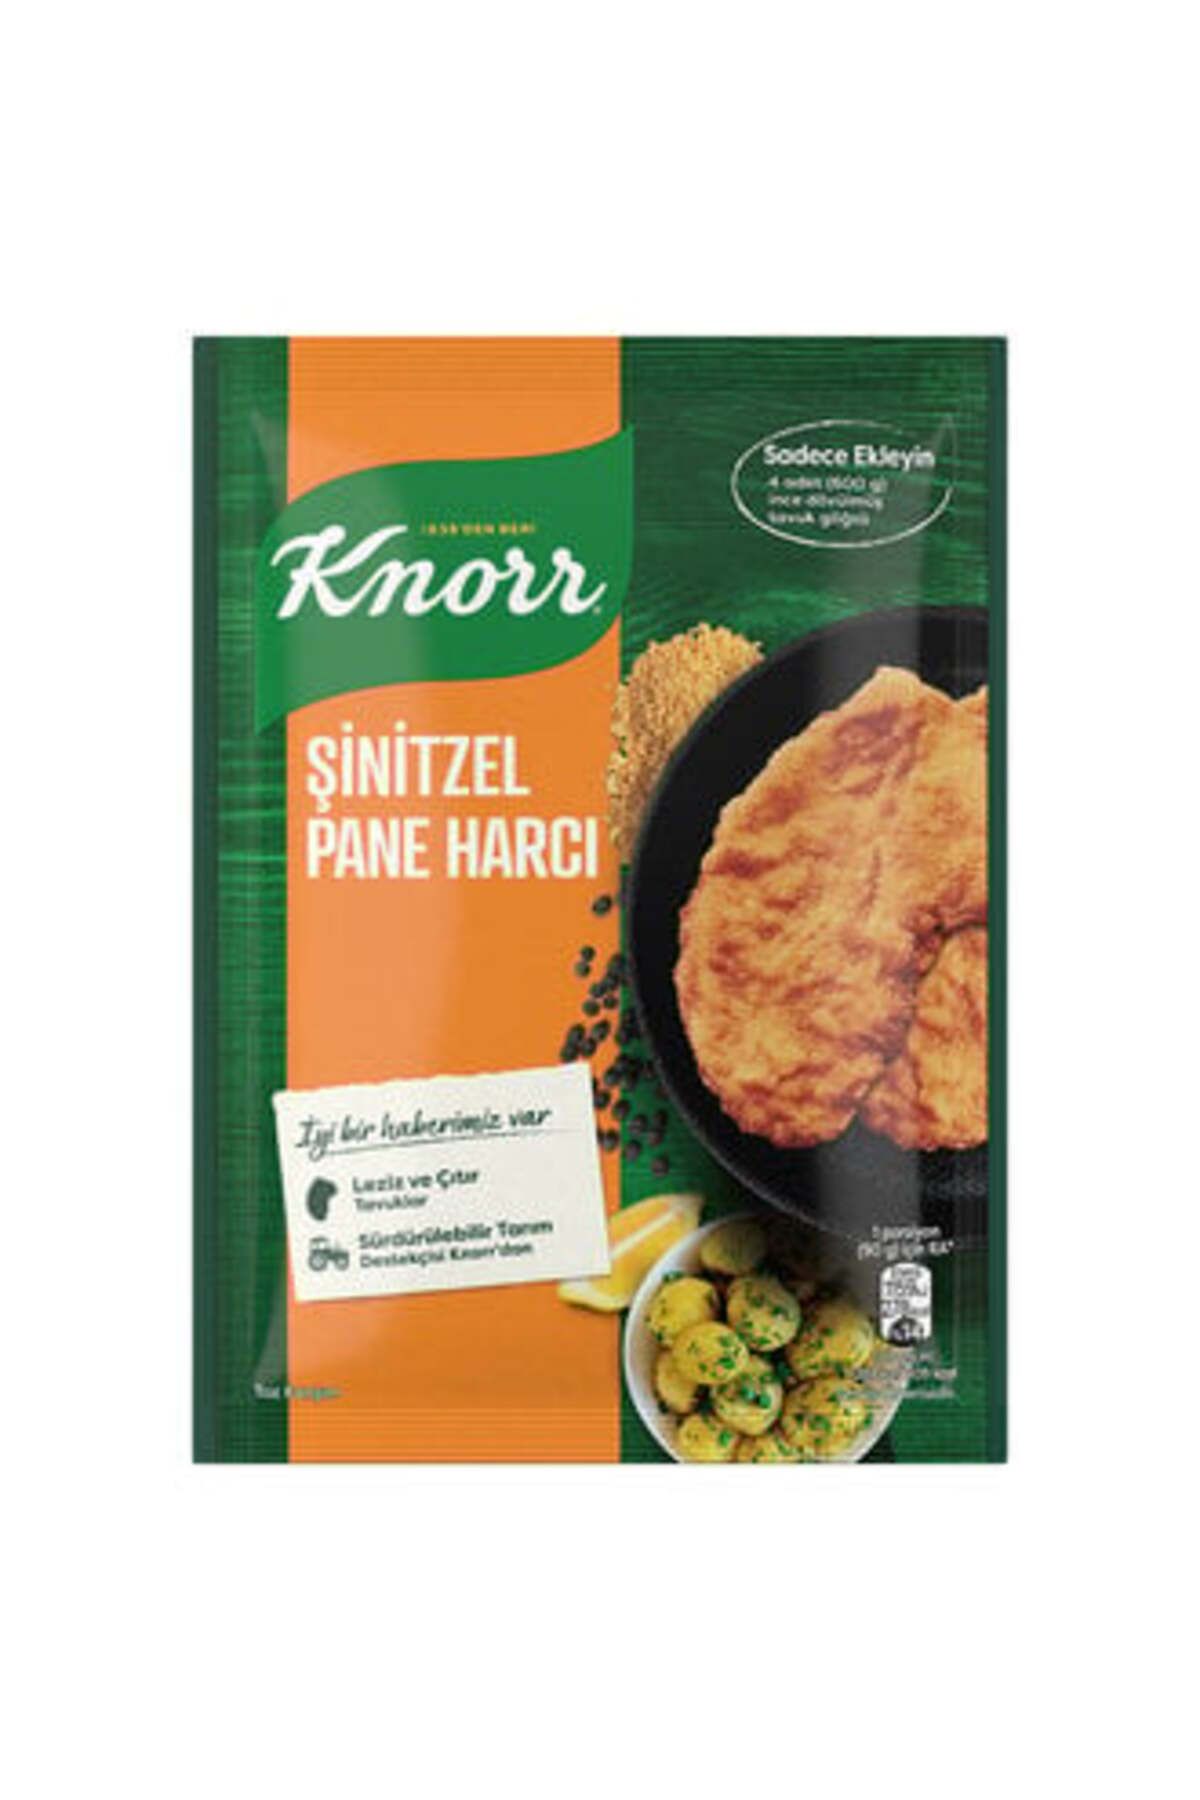 Knorr ( ETİ PETİTO HEDİYE ) Knorr Şinitzel Pane Harcı 90 gr ( 2 ADET )